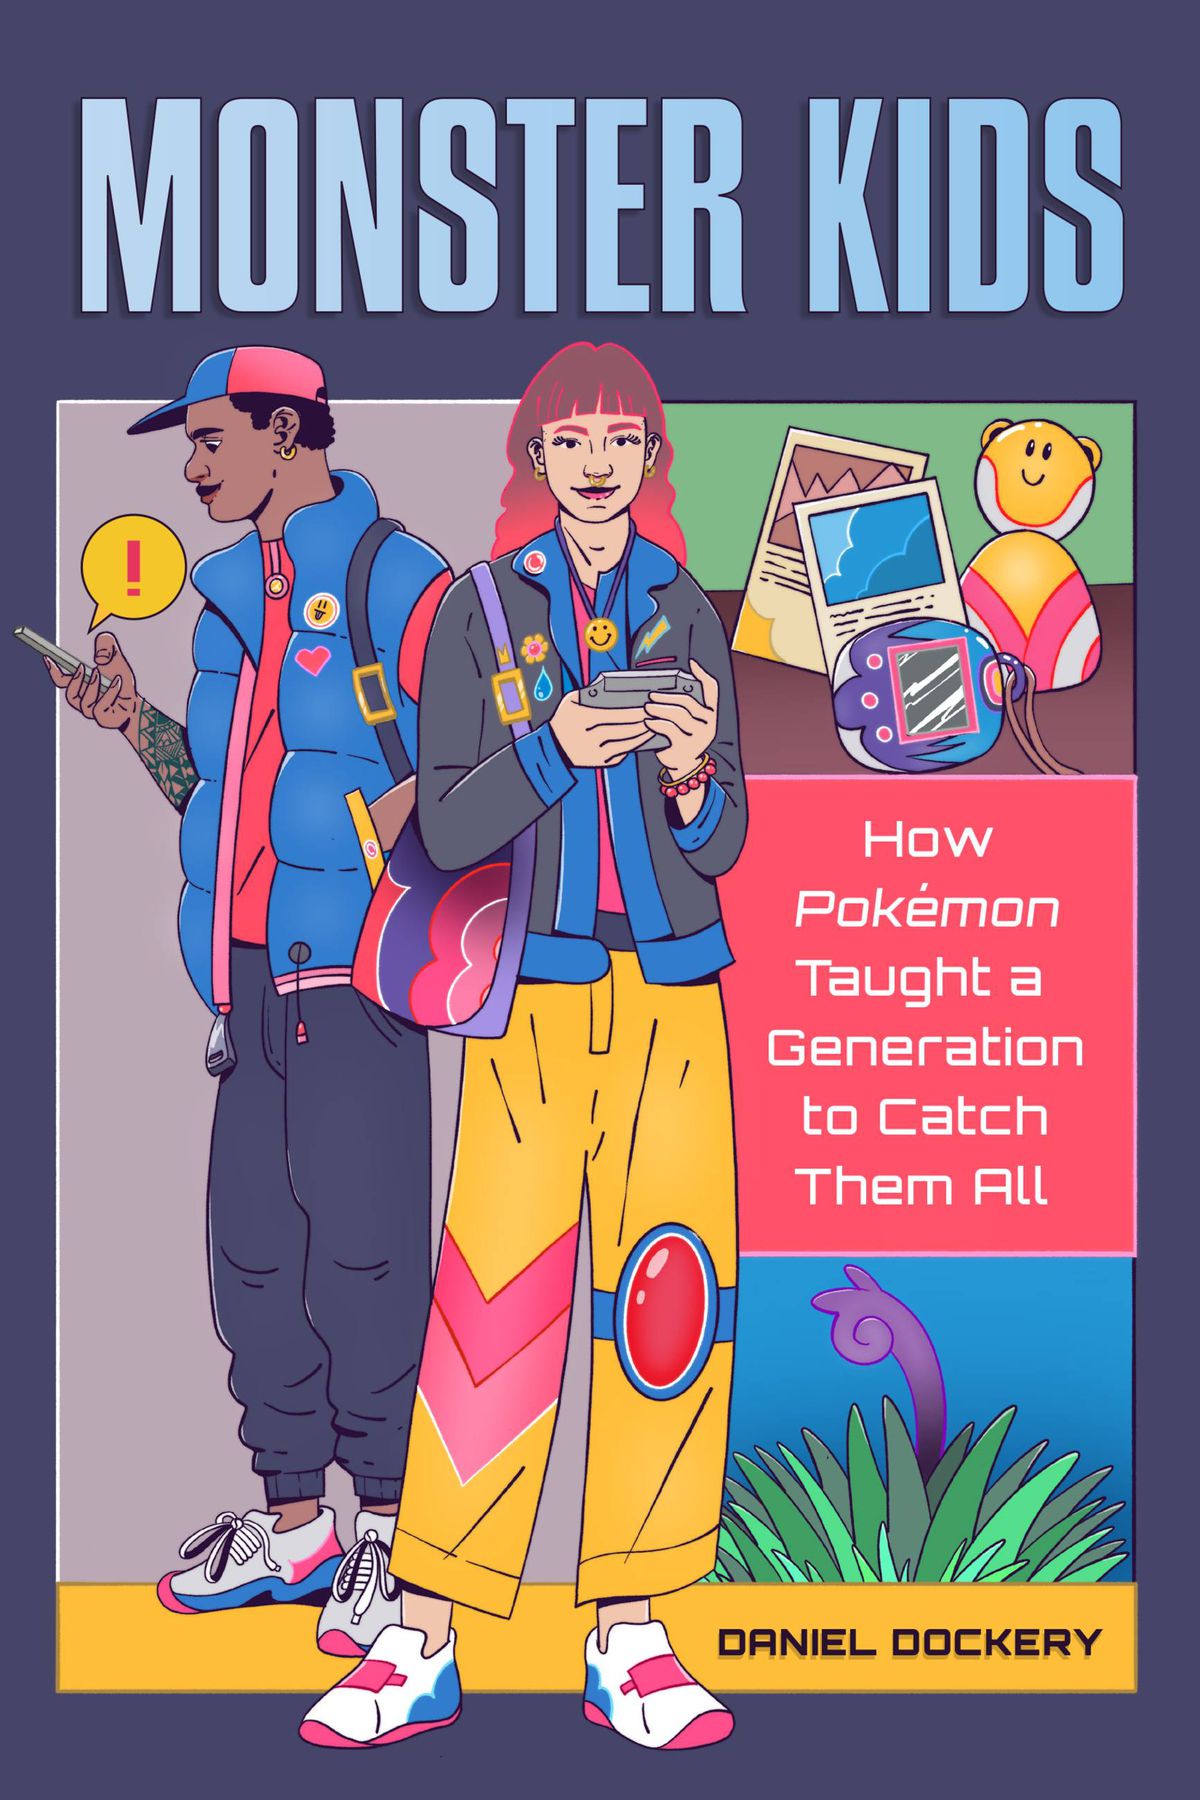 Una copertina per Monster Kids: come i Pokémon hanno insegnato a una generazione a catturarli tutti.  L'illustrazione di un giovane uomo e una donna stanno uno accanto all'altro, entrambi vestiti con abiti moderni e colorati.